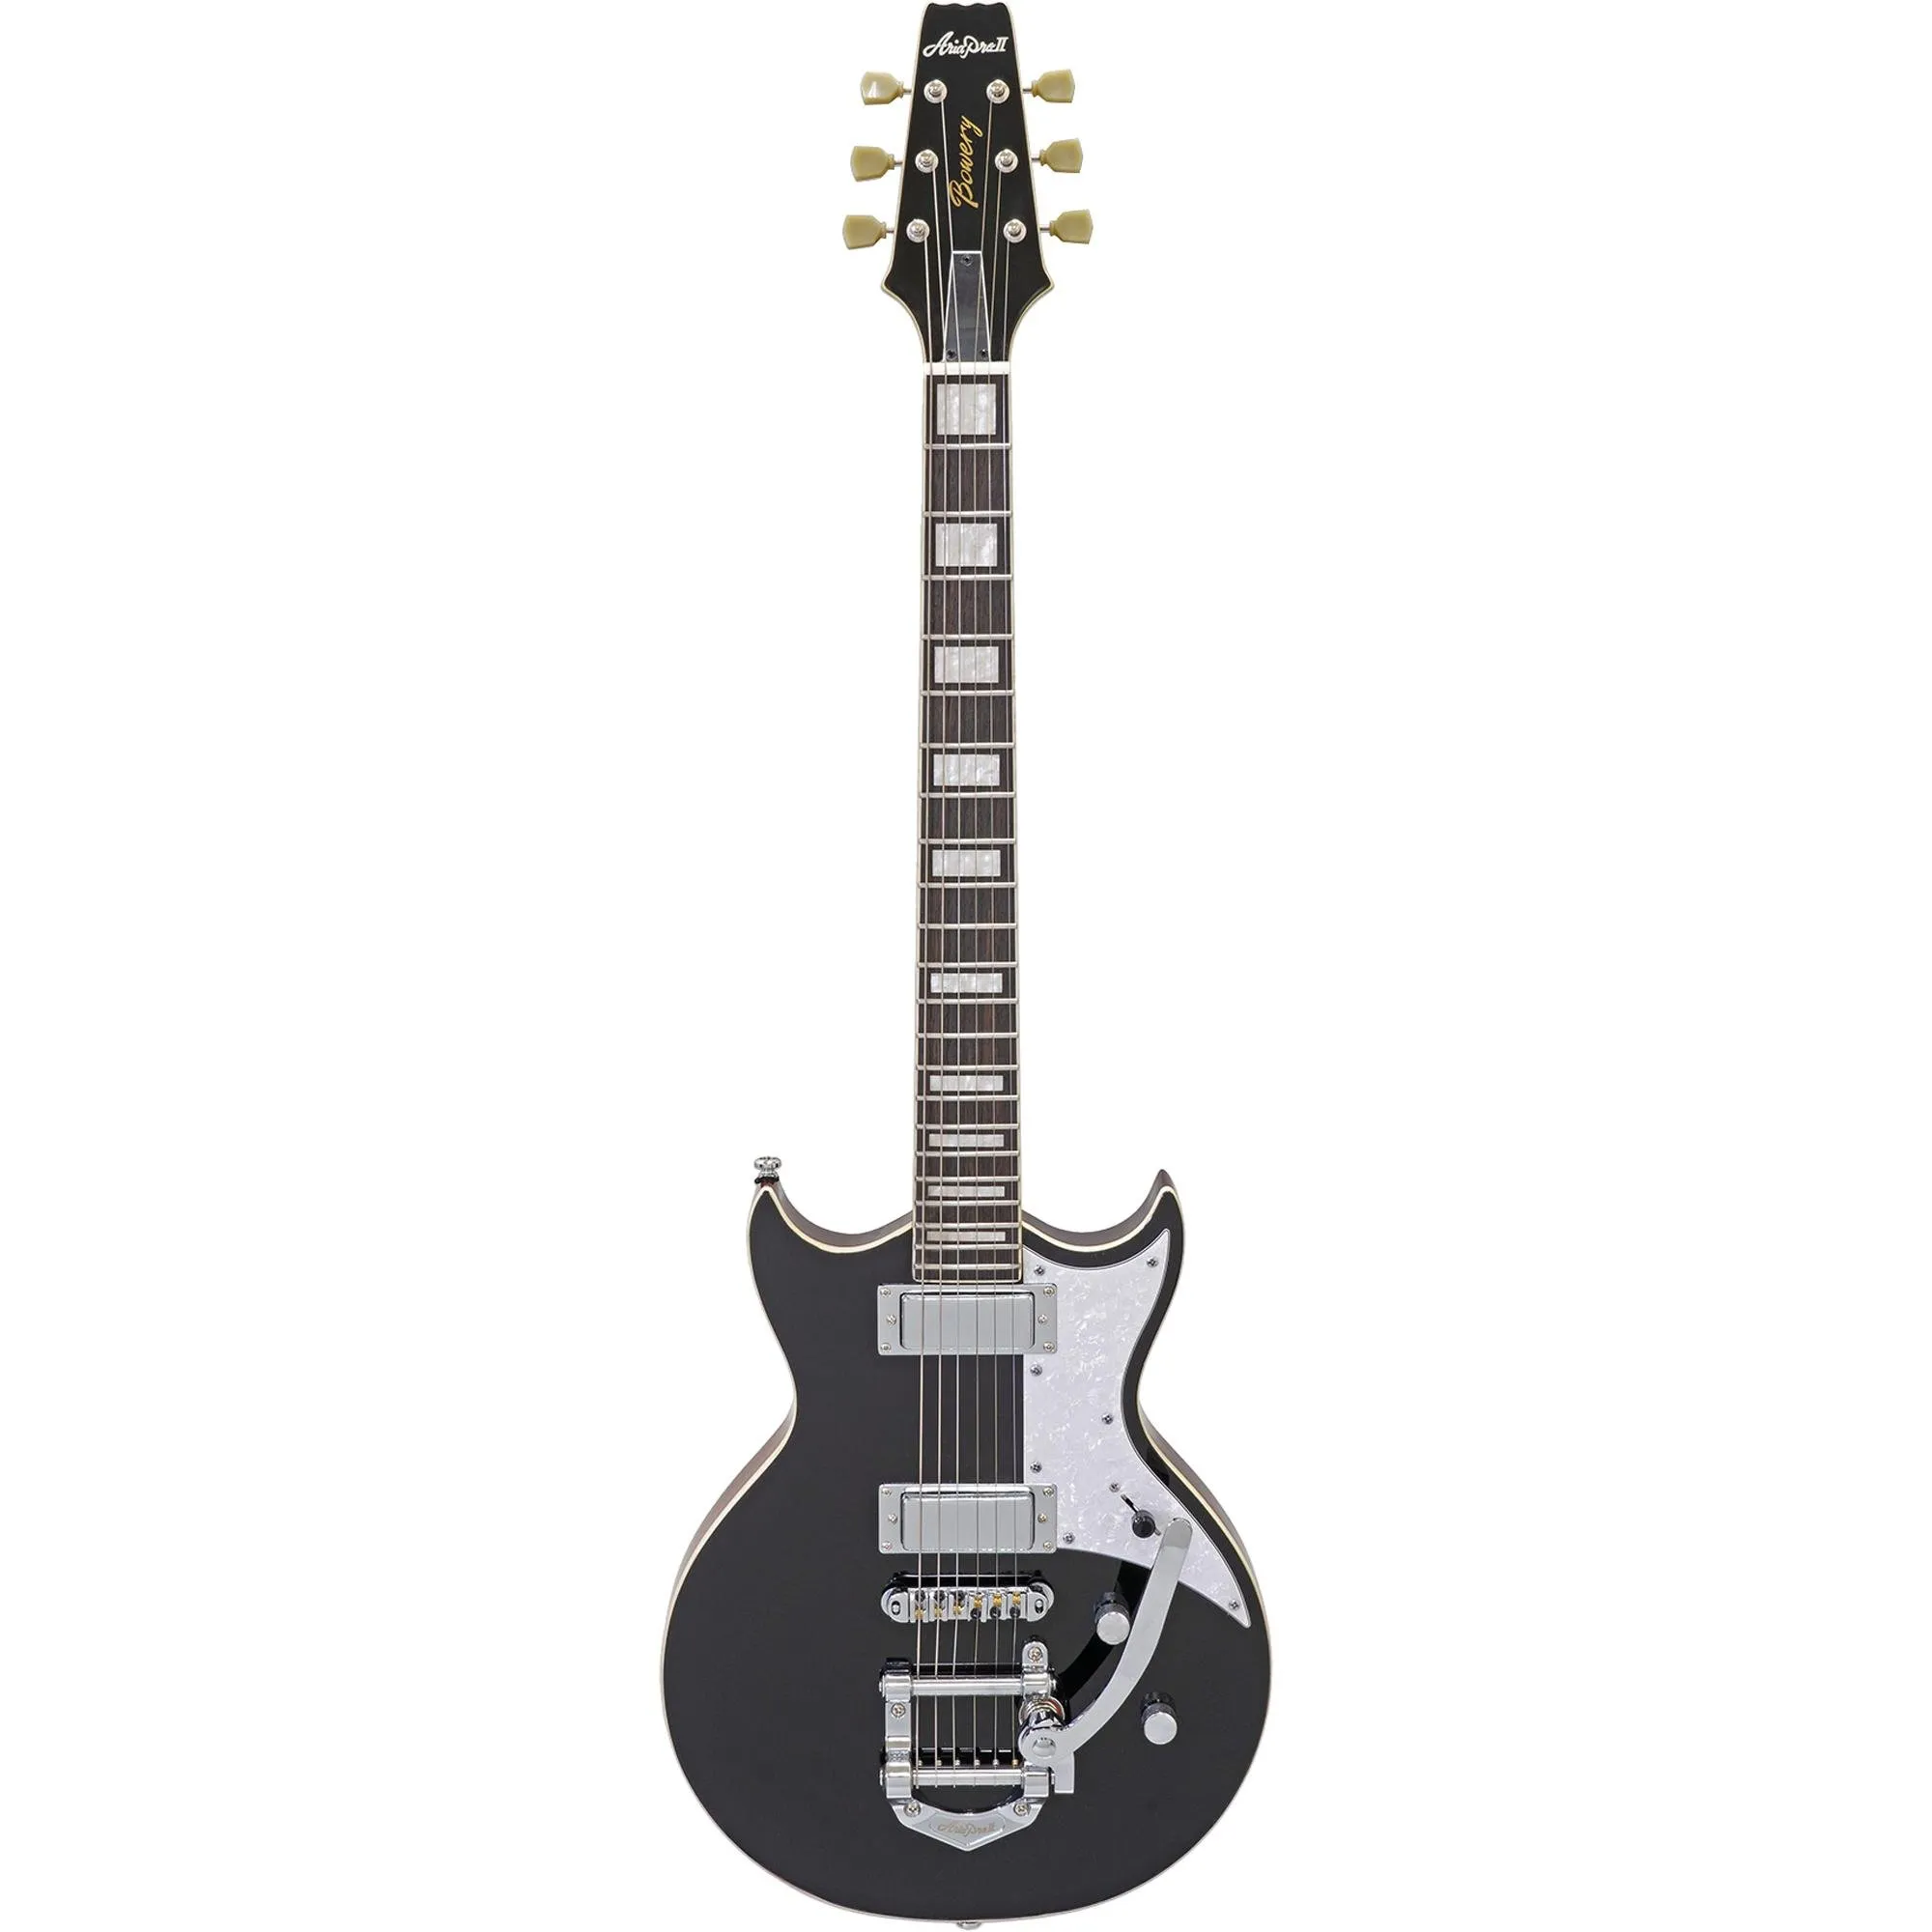 Guitarra Aria Pro II 212-MK2 Bowery Black por 5.053,66 à vista no boleto/pix ou parcele em até 12x sem juros. Compre na loja Aria!